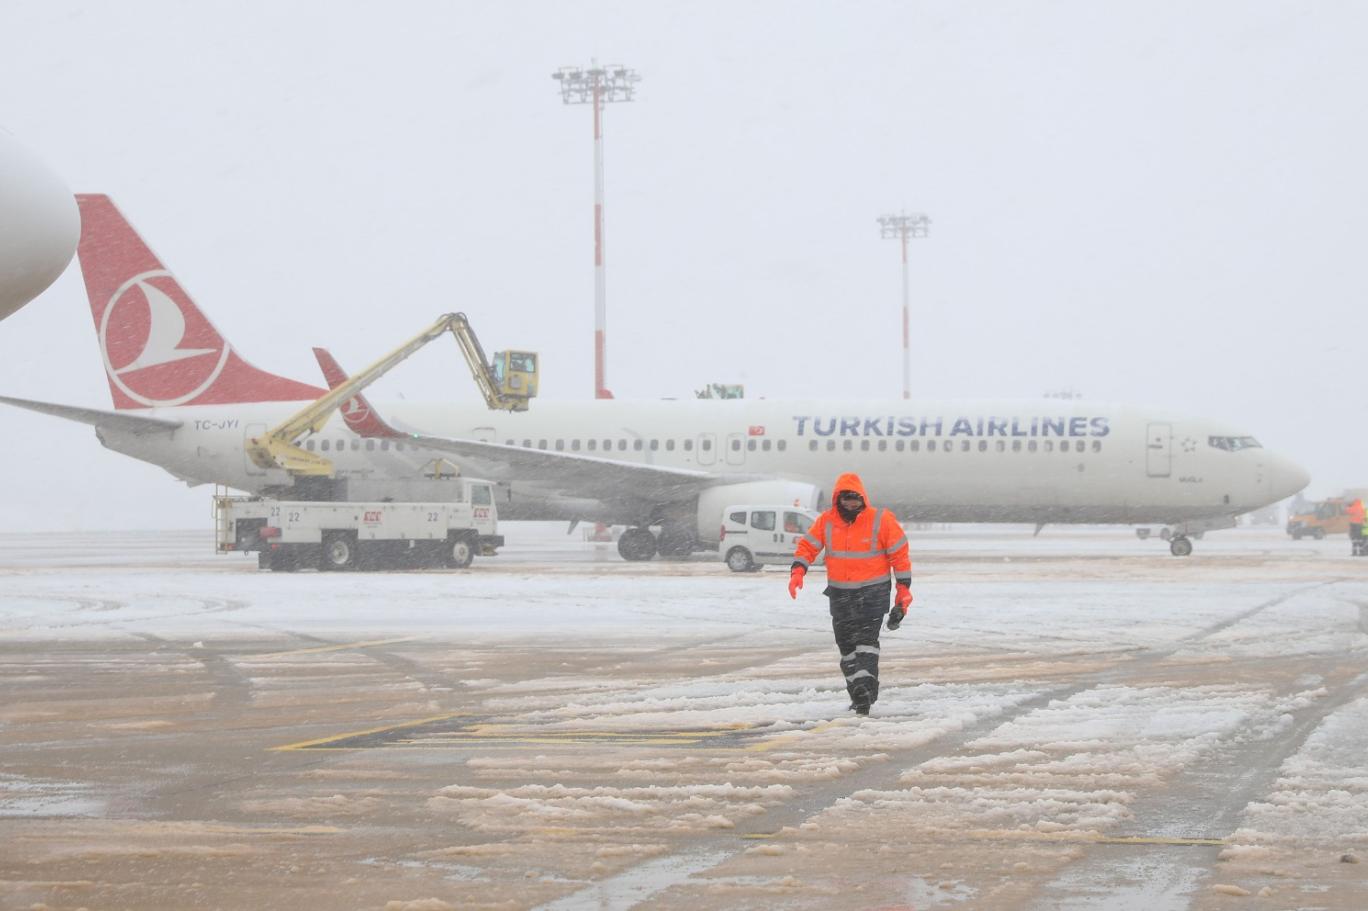 В стамбуле отменили. Турция снегопад 2022. Турецкие авиалинии. Снег в Турции. Turkish Airlines в снегу.